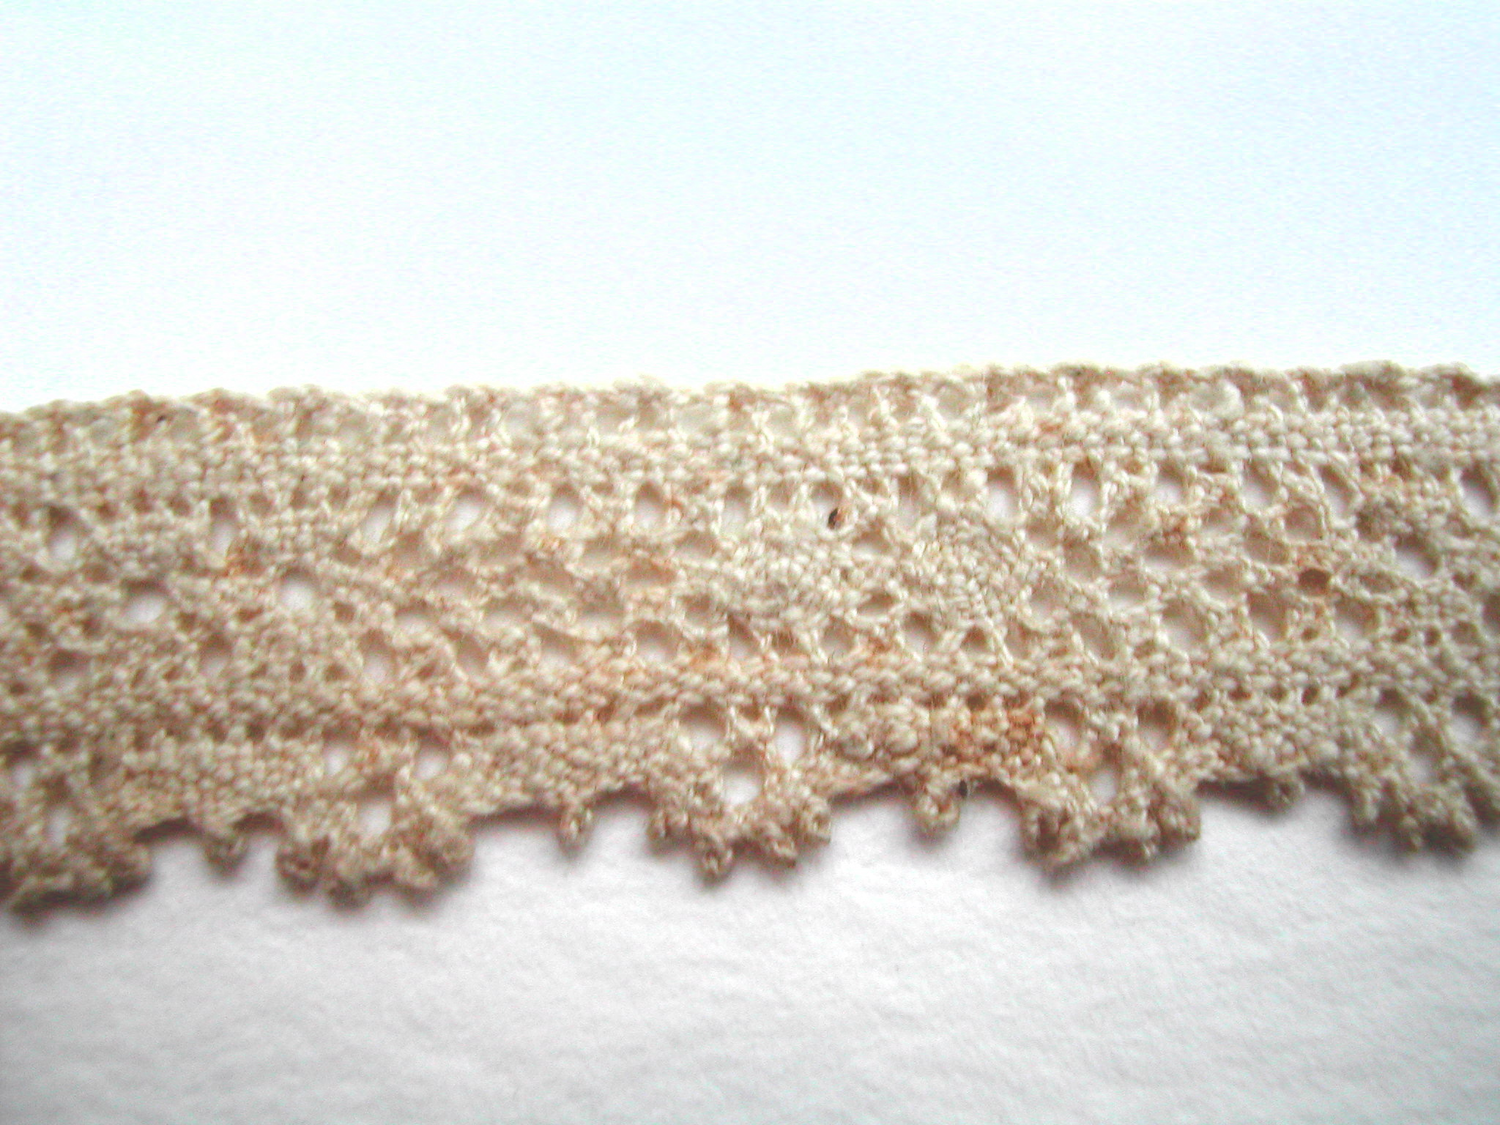 Lace knitting - Wikipedia